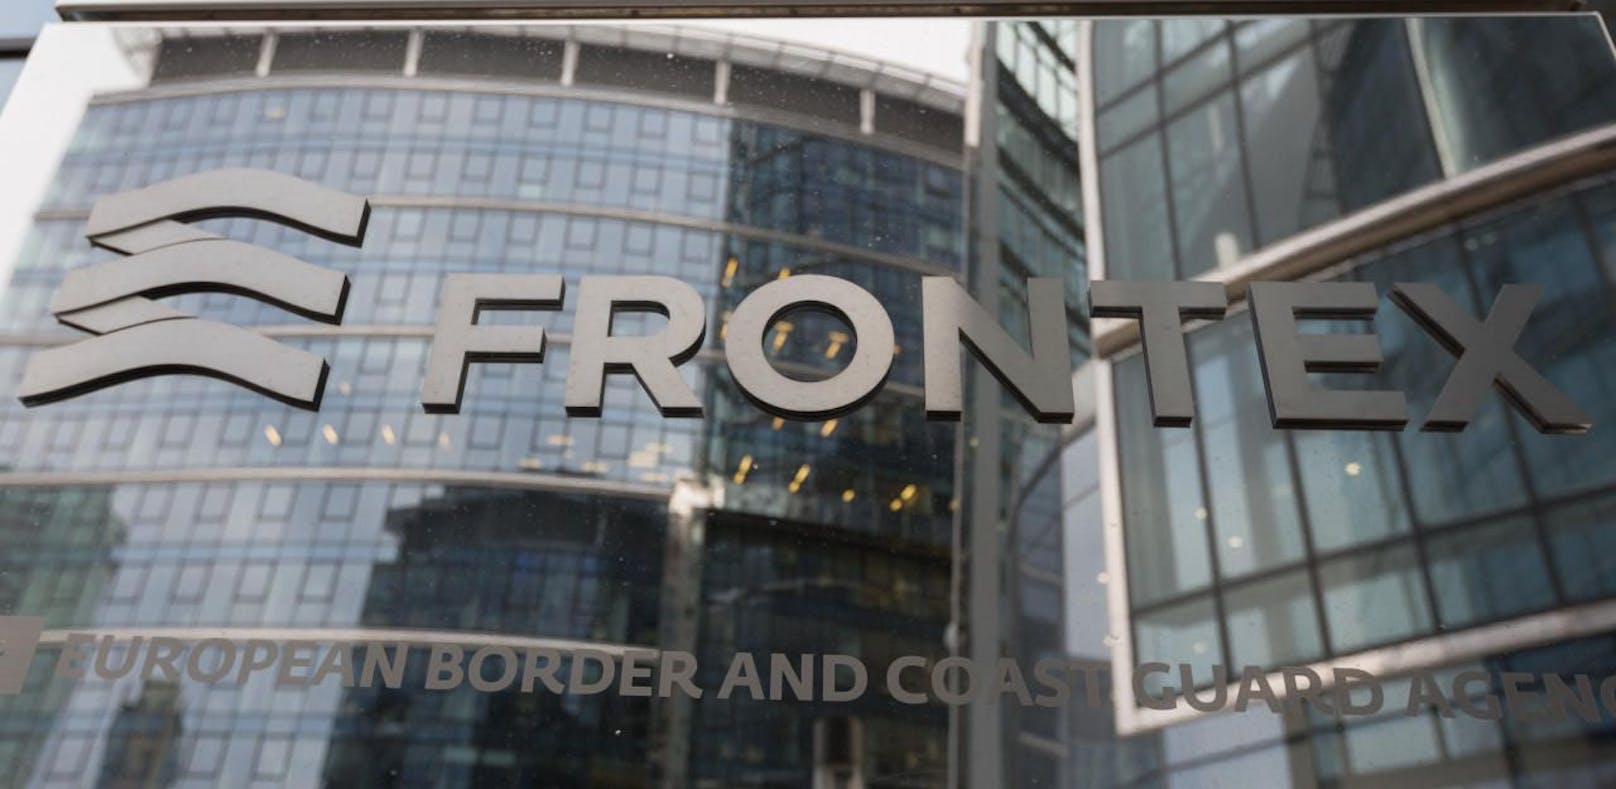 Das Hauptquartier der EU-Grenzschutzbehörde Frontex in Warschau, Polen.